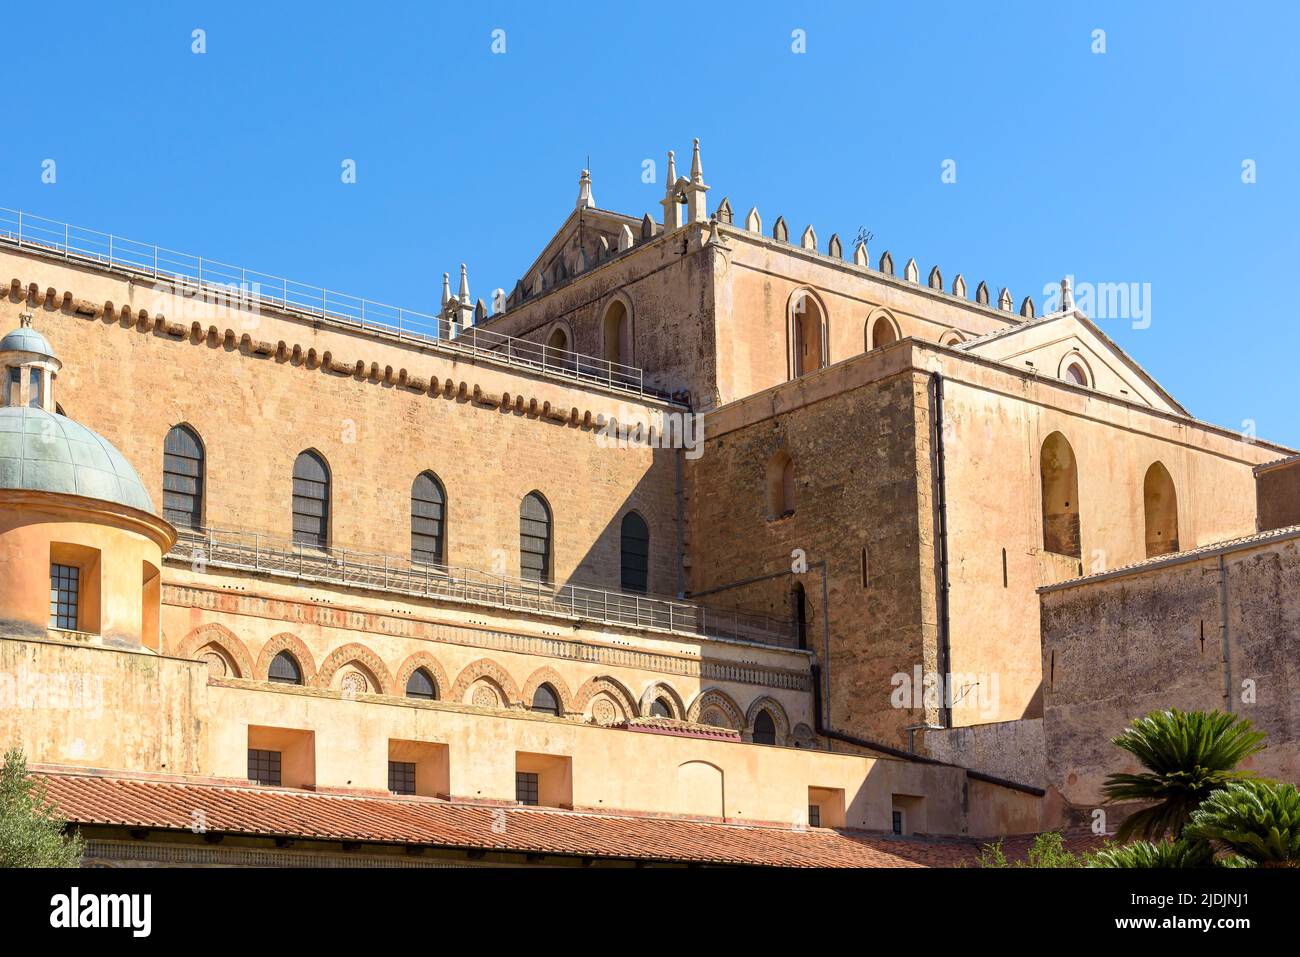 Vista de primer plano del claustro de la Abadía de Monreale, Palermo, Italia Foto de stock